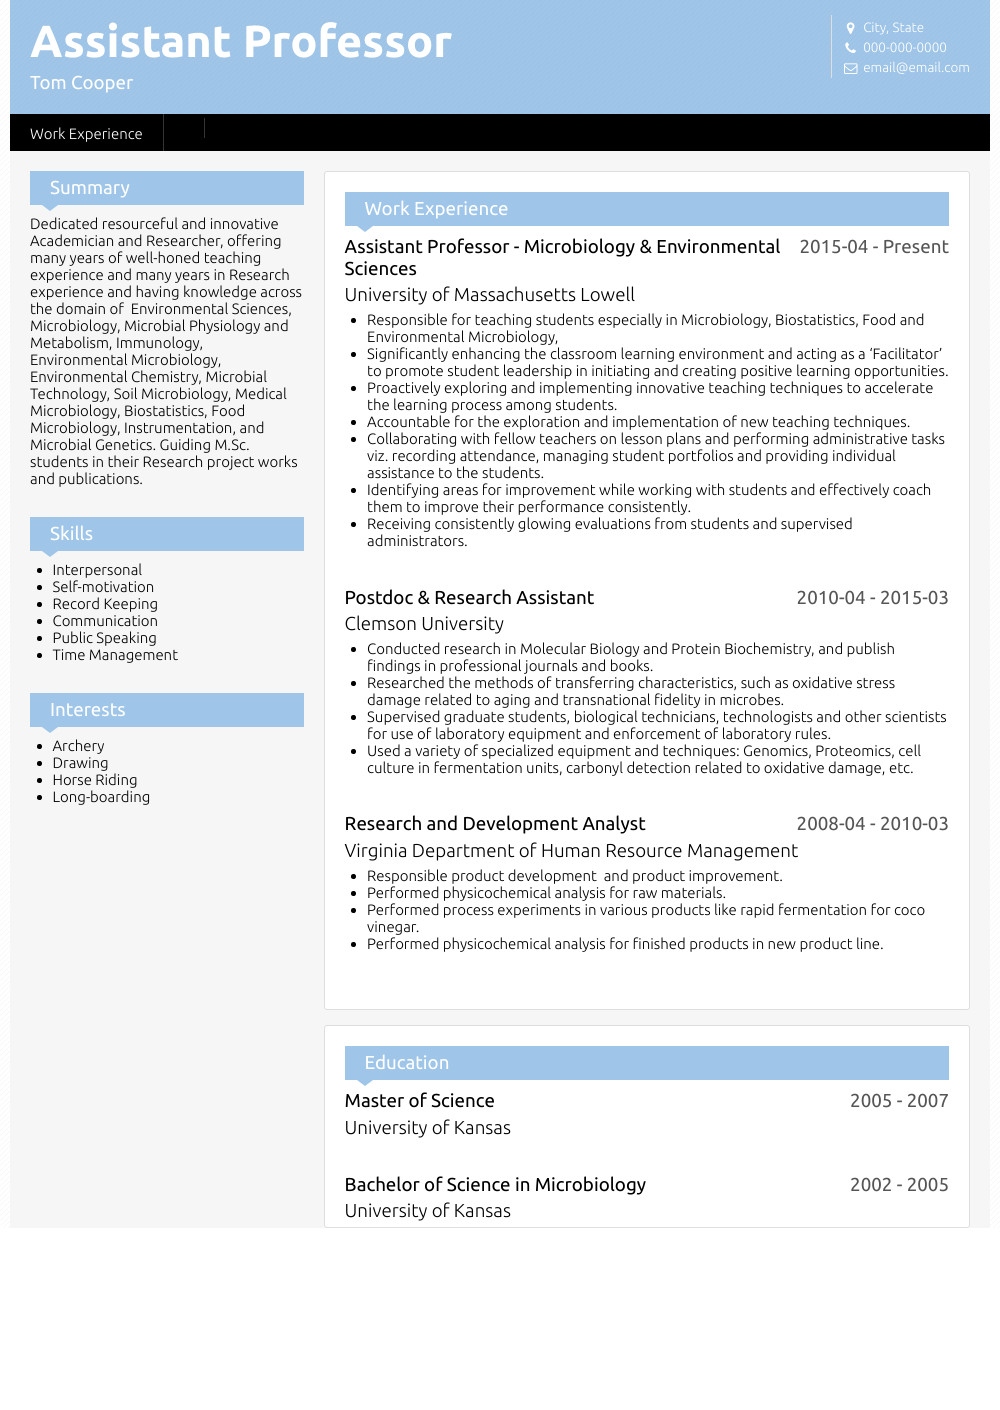 Sample Resume for assistant Professor Fresher assistant Professor Resume Samples and Templates